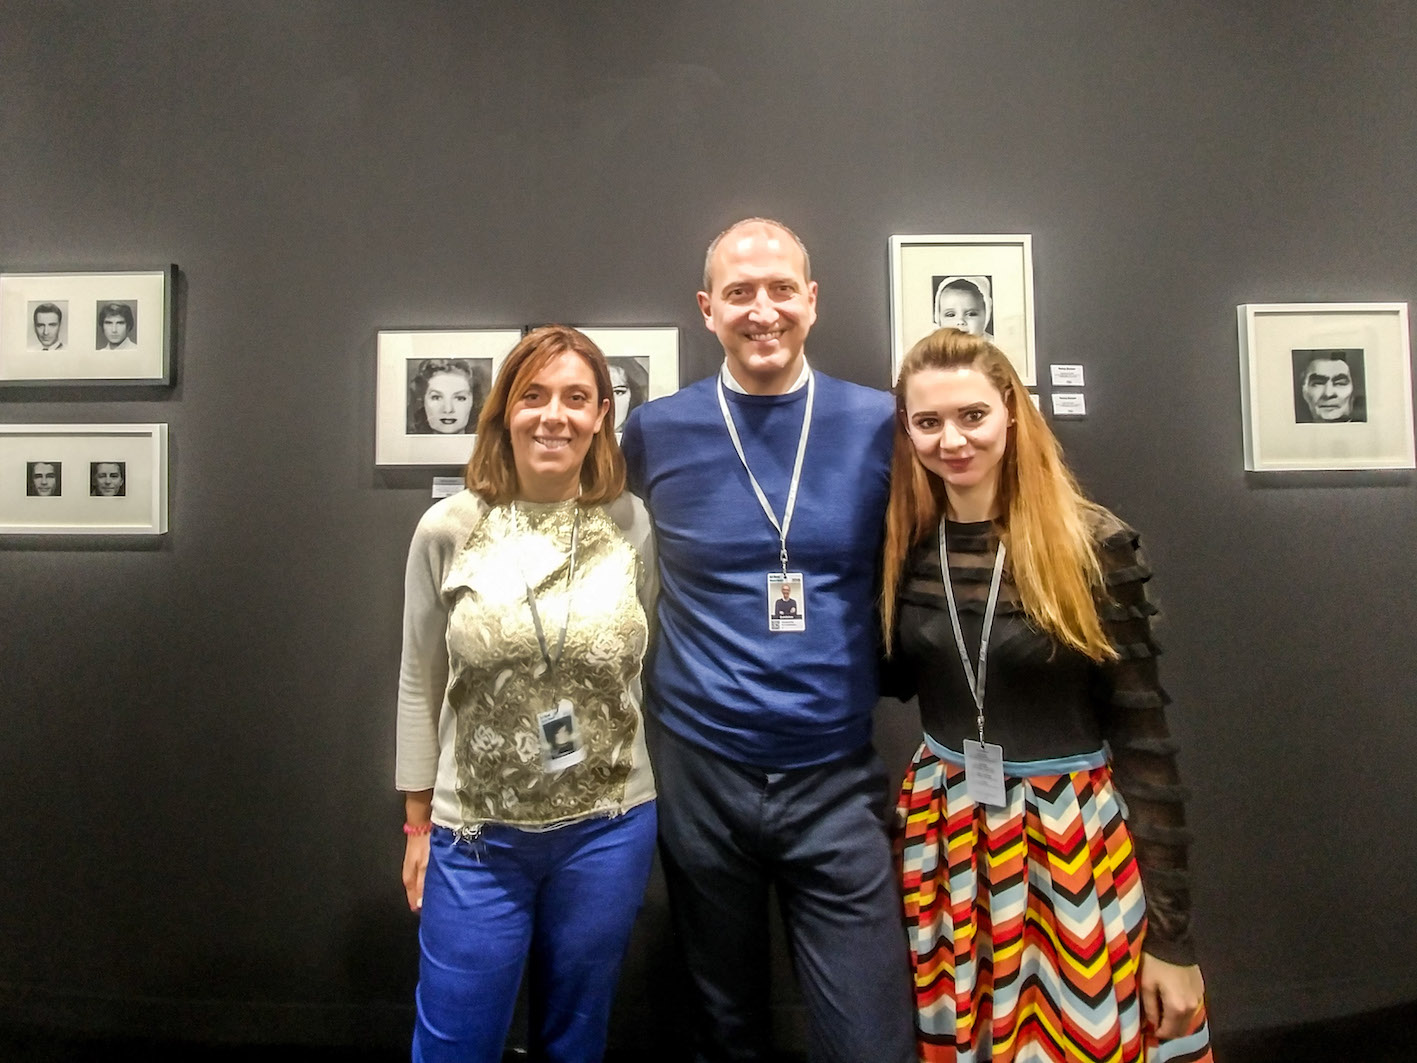  Il team di Paci: Monica e Giampaolo Paci e Federica Manfredi davanti alle fotografie di Nancy Burson